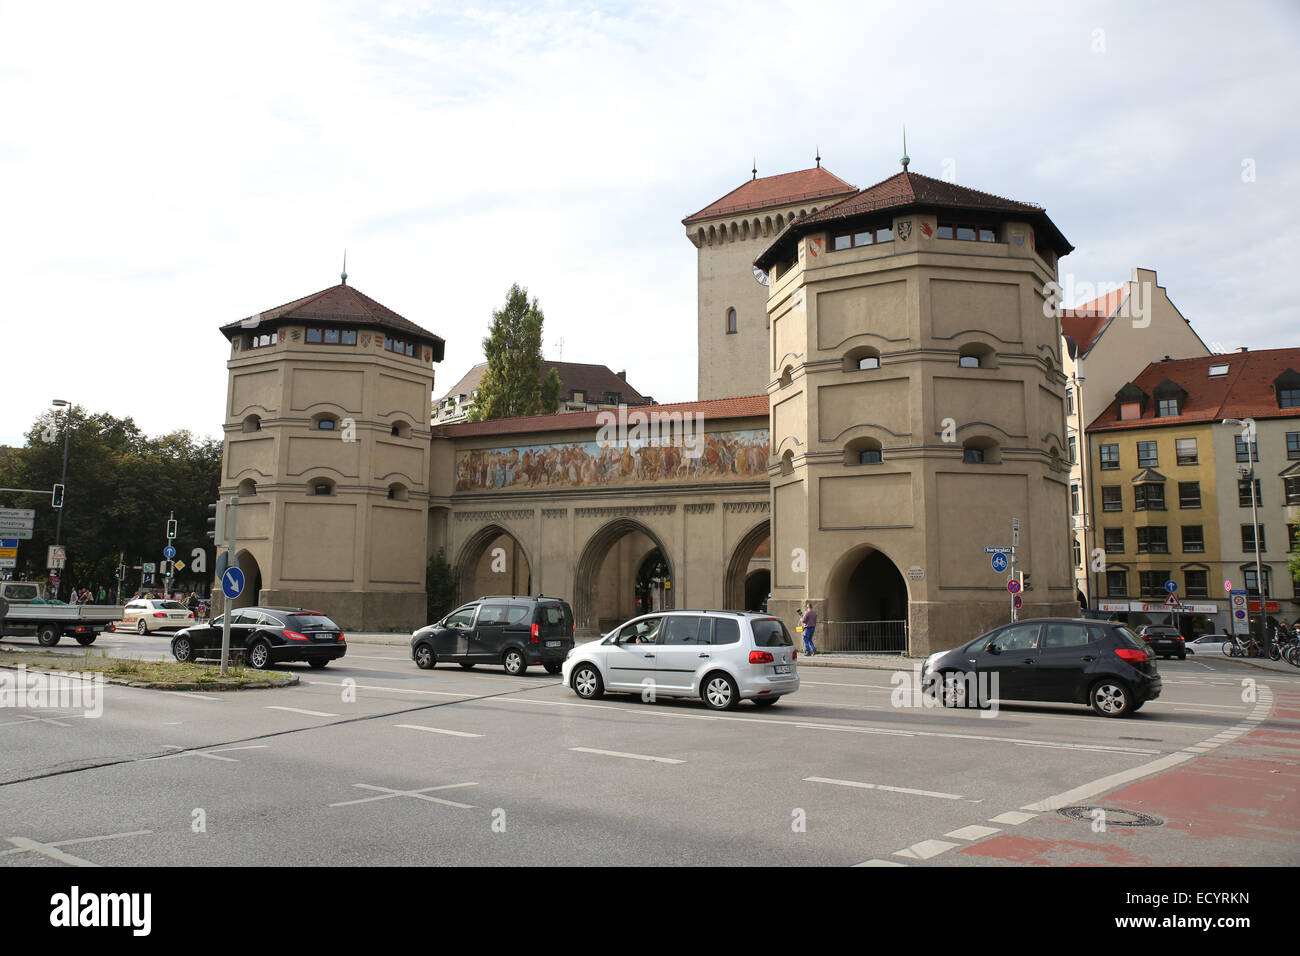 Isartor Monaco di Baviera vecchia porta della città Foto Stock